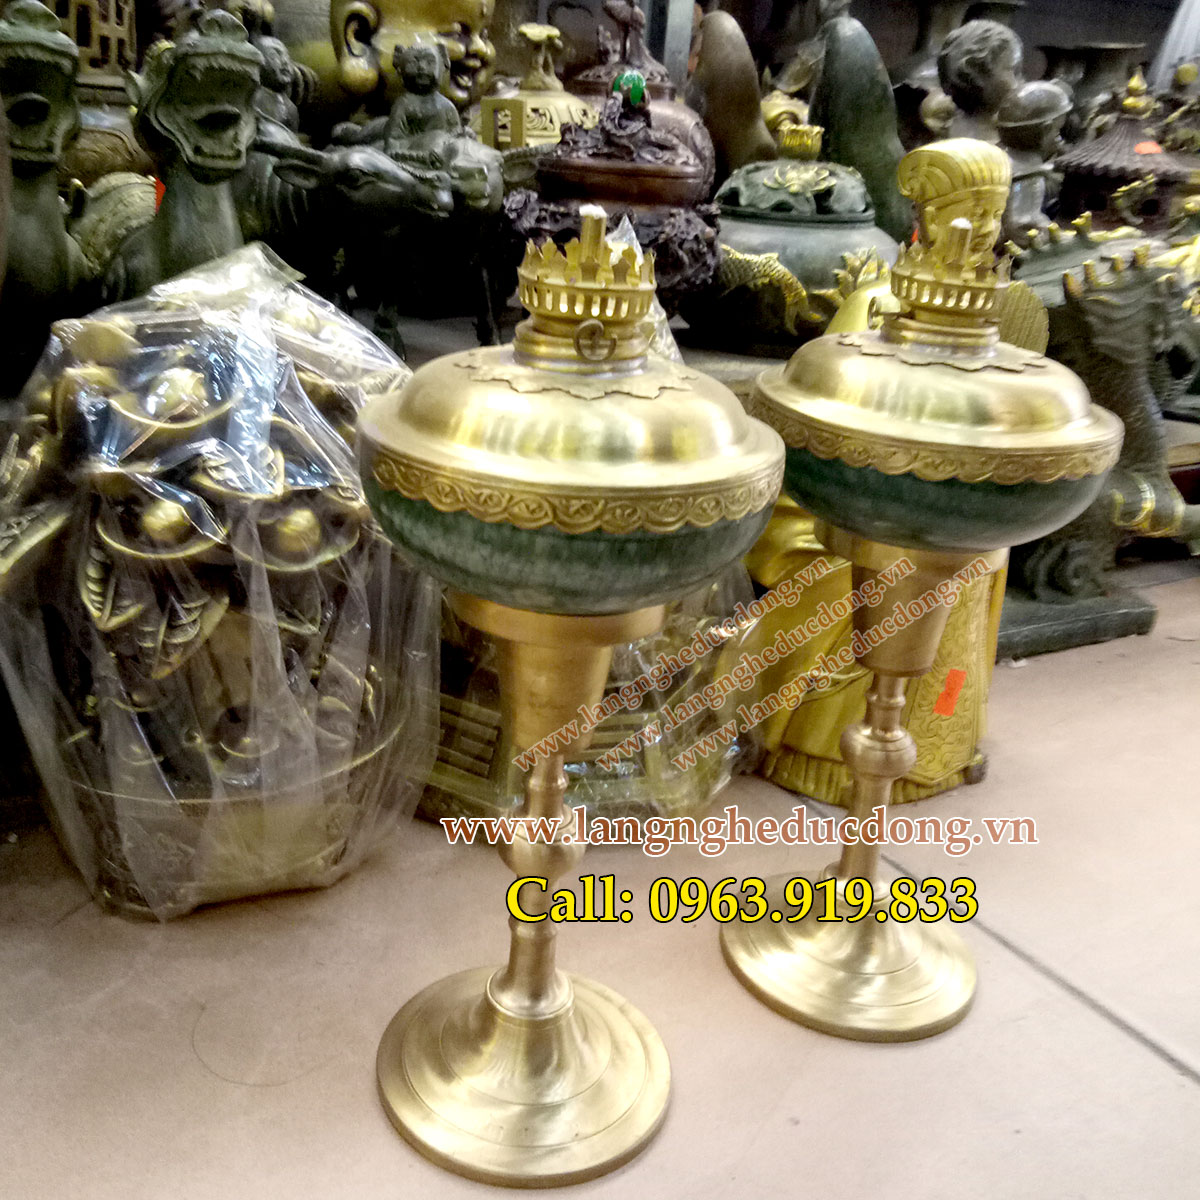 langngheducdong.vn - đèn dầu, đèn sứ bọc đồng, đèn thắp dầu thơm, đèn thờ thắp tinh dầu